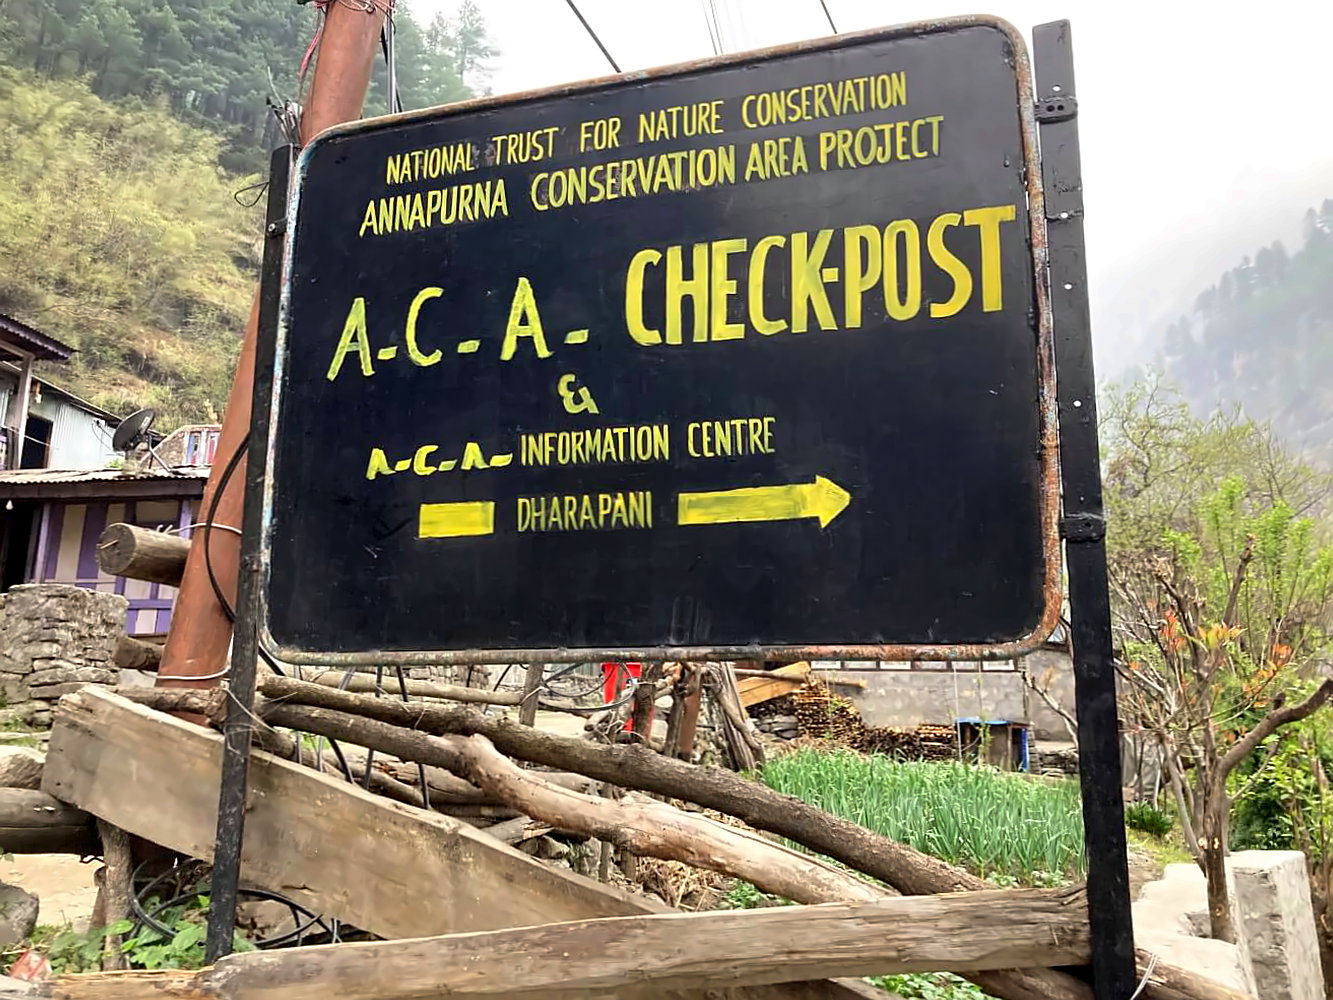 Checkpoint auf dem Annapurna Circuit in Dharapani.